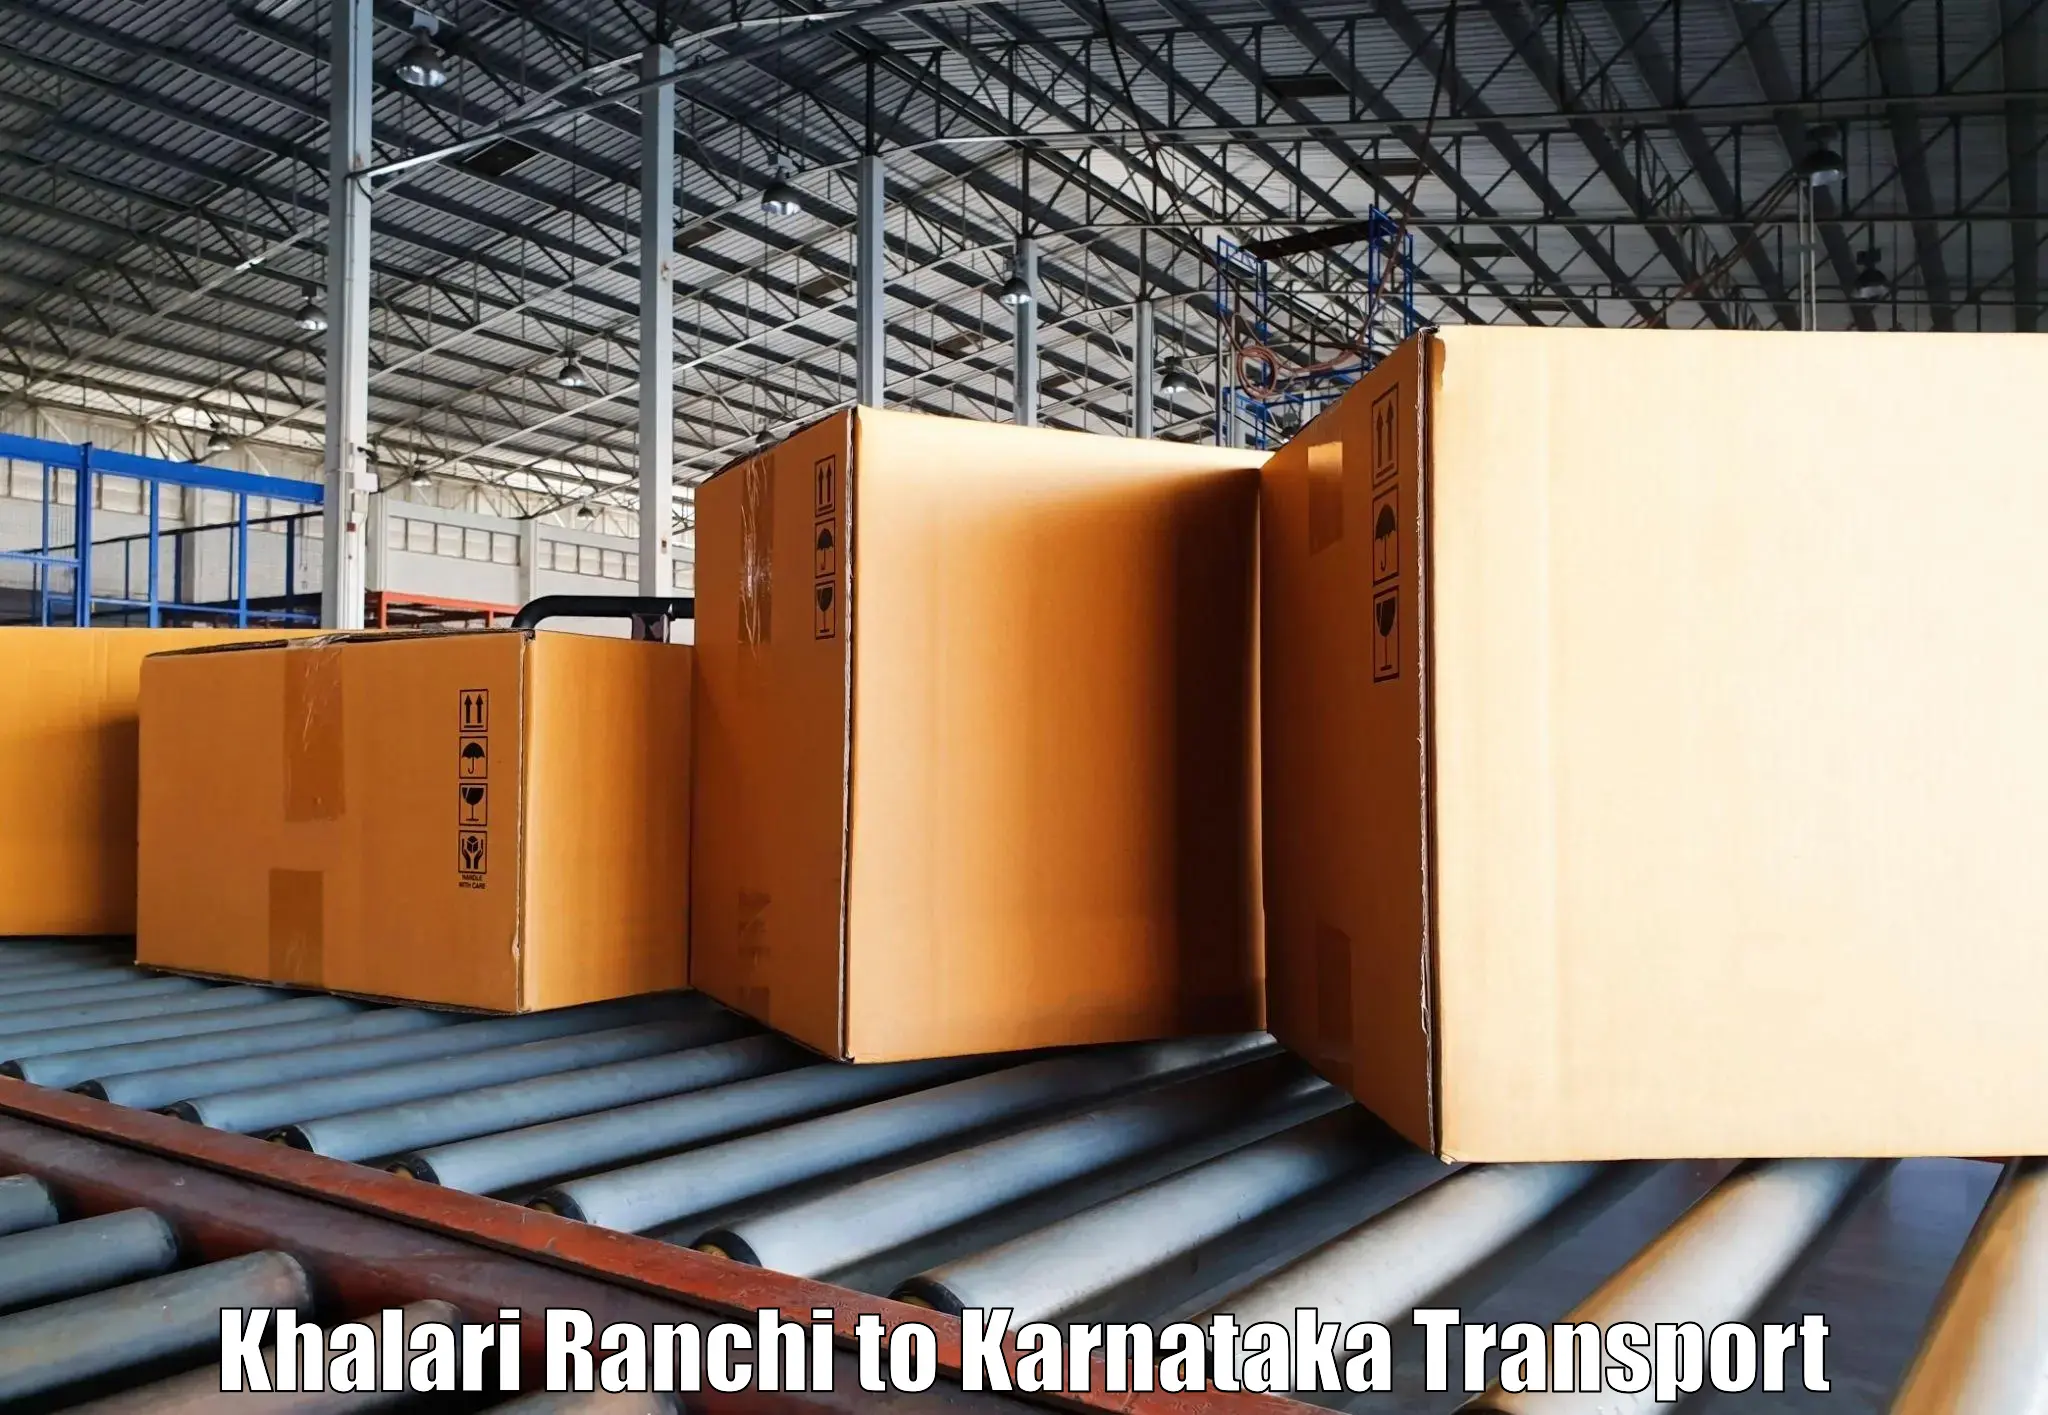 Cargo train transport services Khalari Ranchi to Ballari